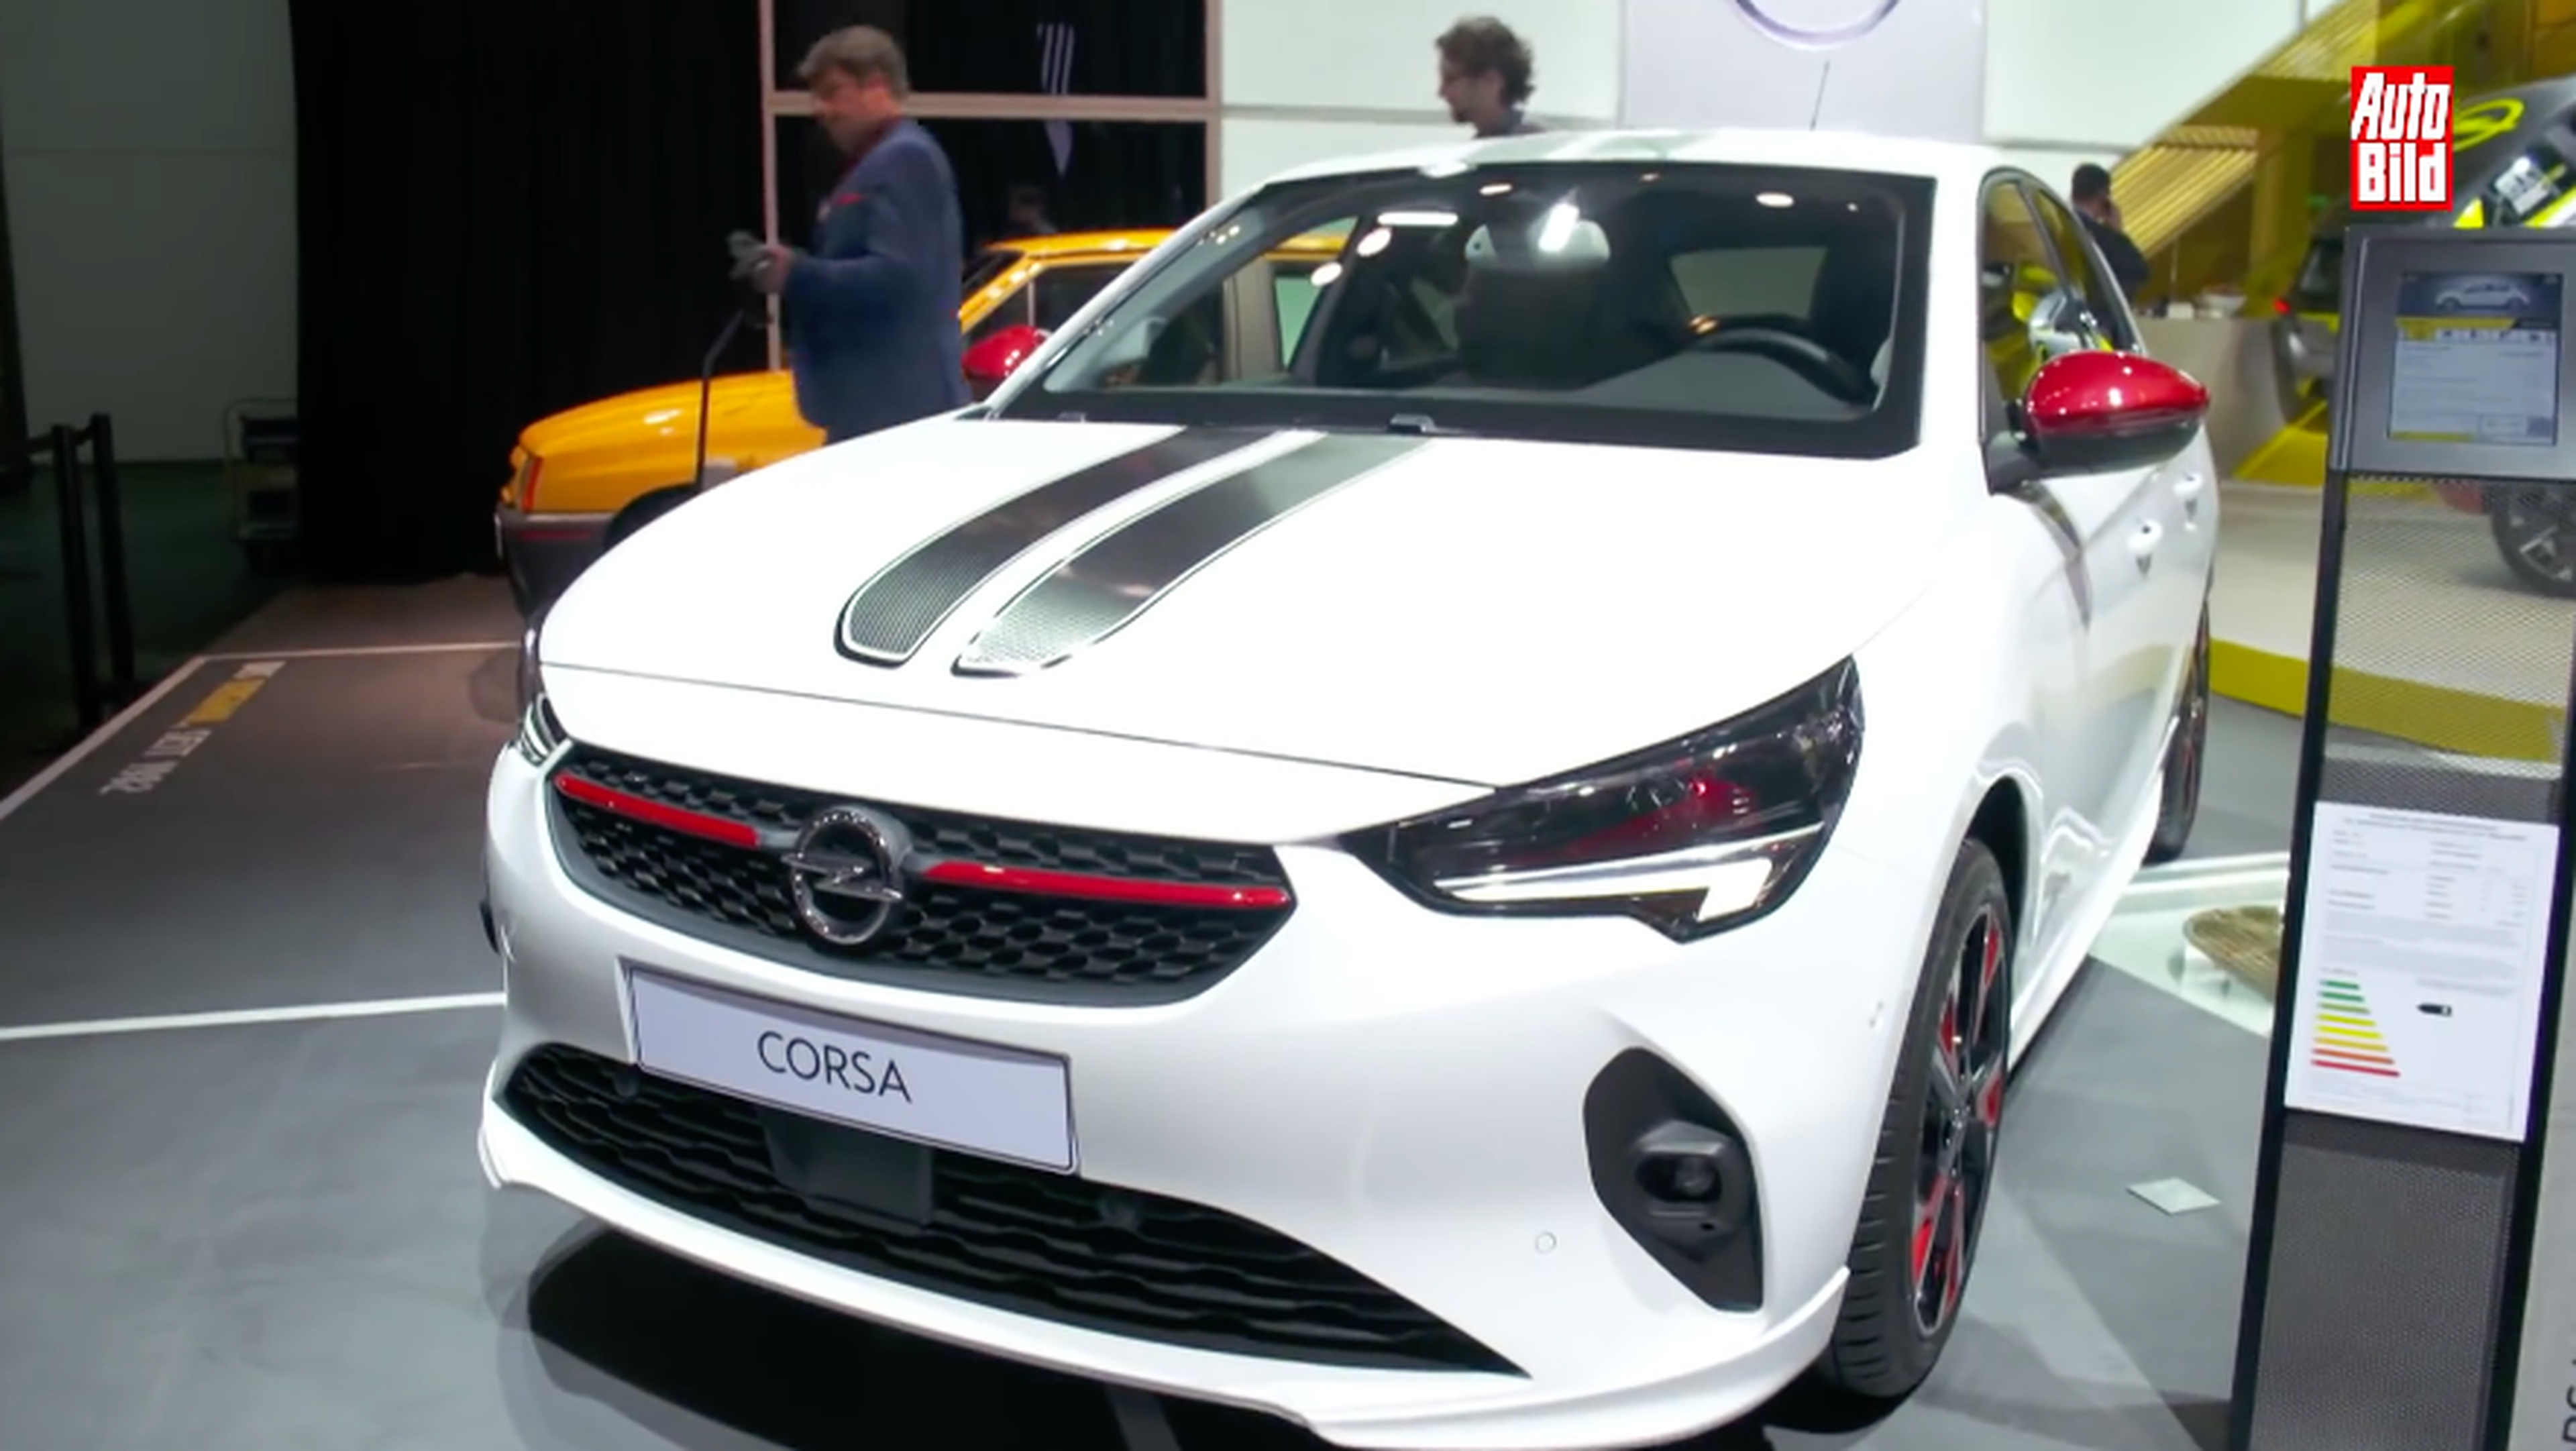 VÍDEO: Opel Corsa 2019, todo lo que quieres saber